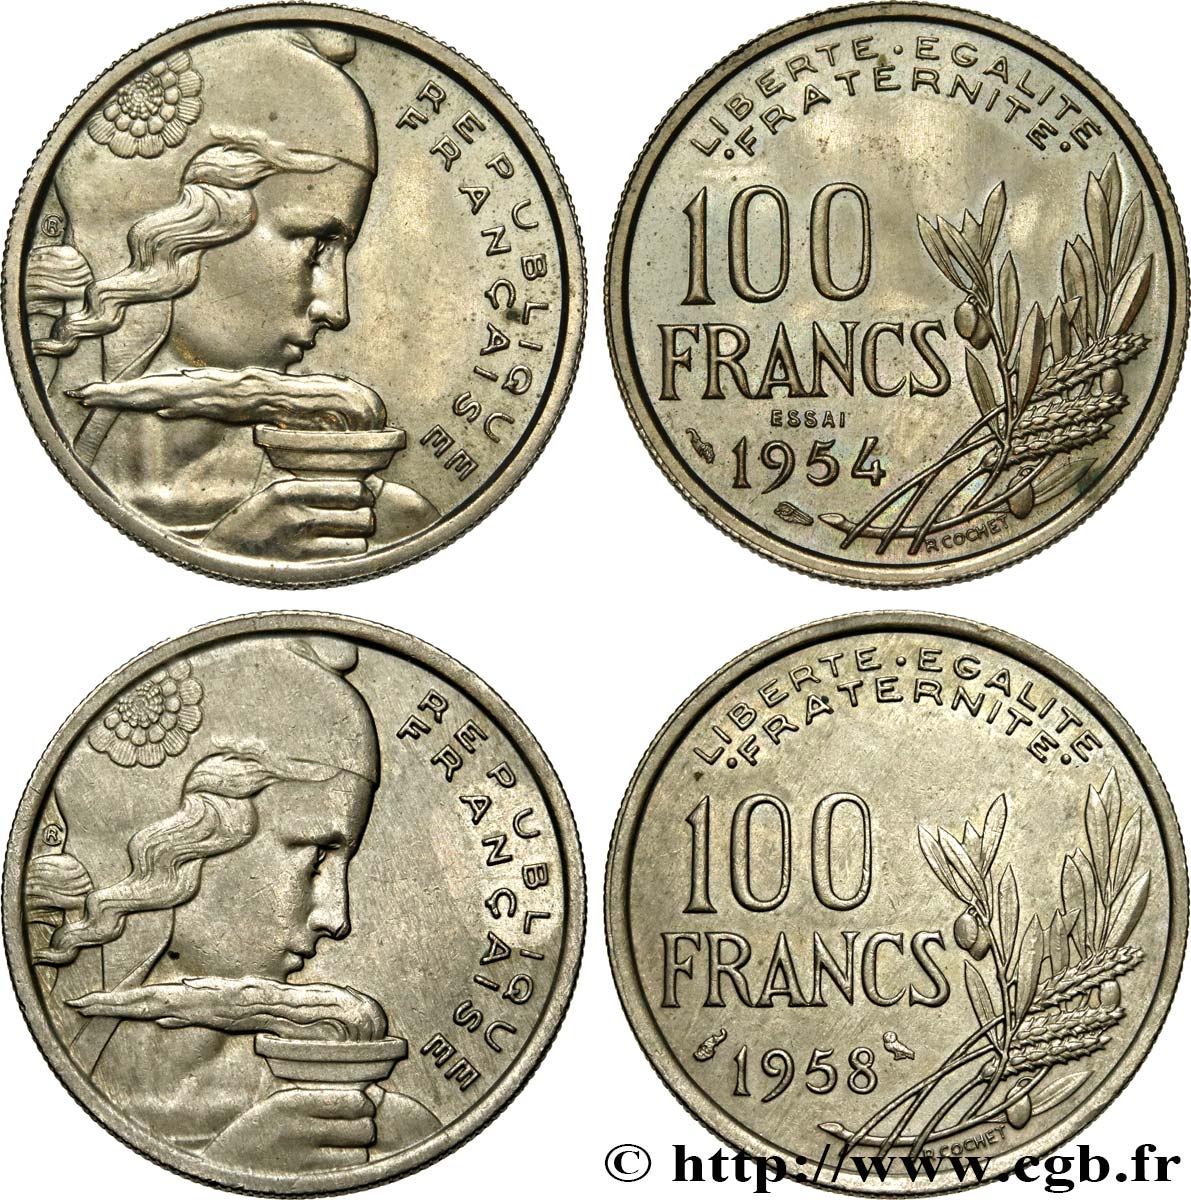 Lot d’un Essai de 100 francs Cochet 1954 + 1958 à la Chouette n.d. Paris F.450/1 MS 